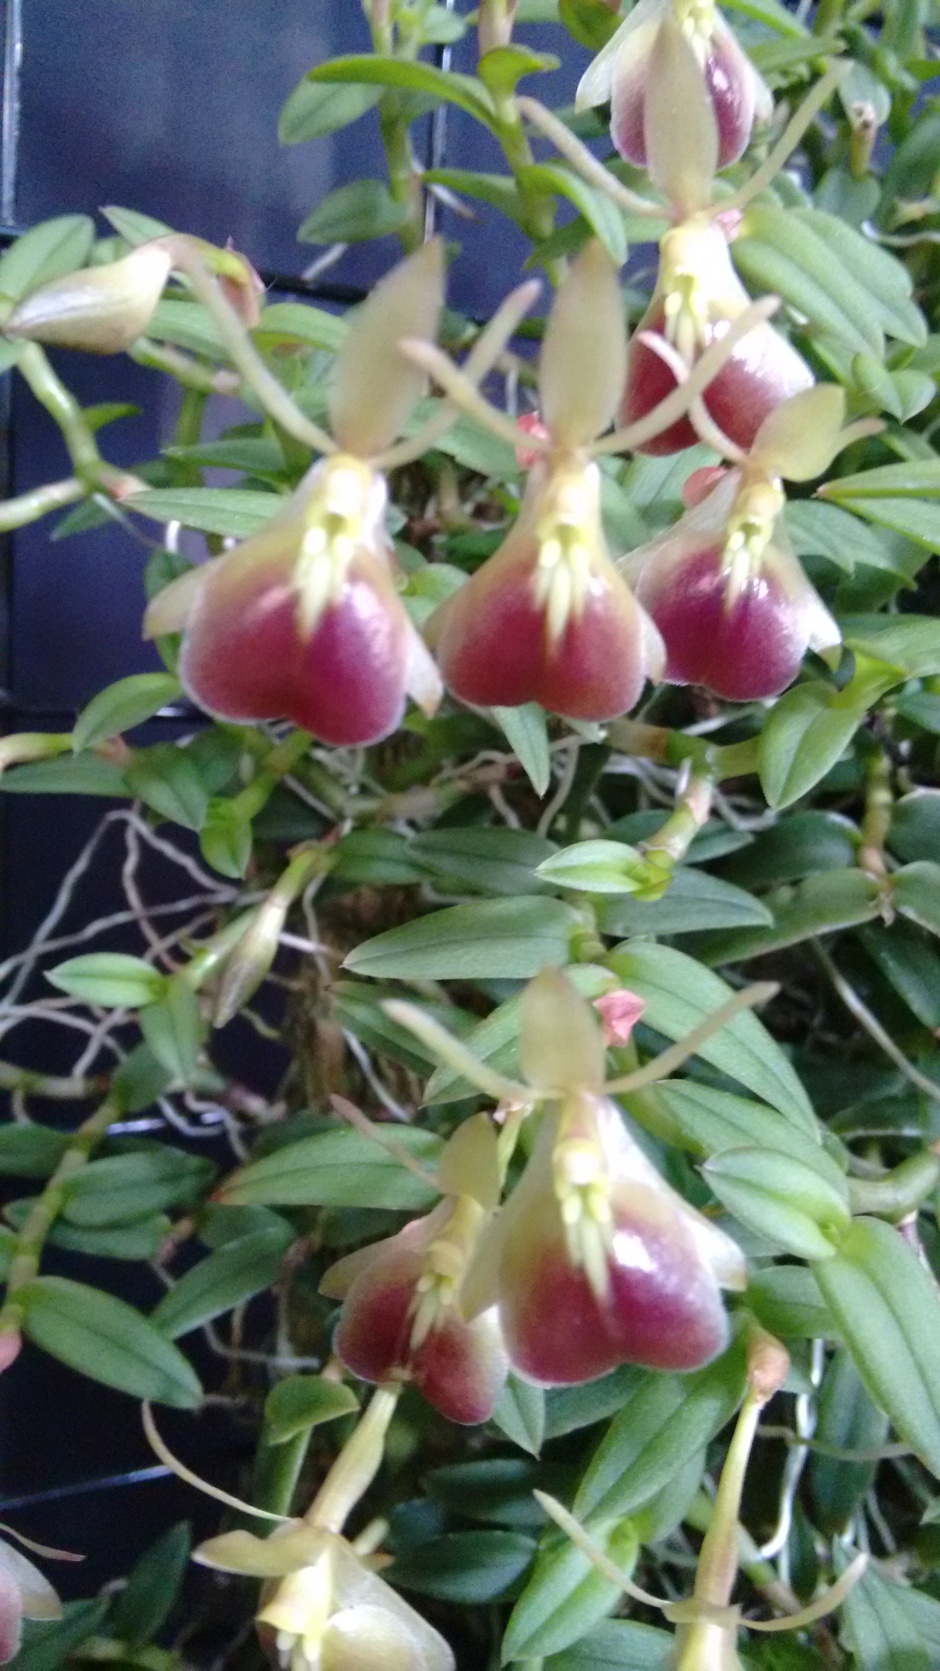 Epidendrum peperomia - associação Orquidofila Iratiense - Medalha de ouro e Melhor Botanica da 111 exp orq bosque sao cristovao - 7abril18 - 2